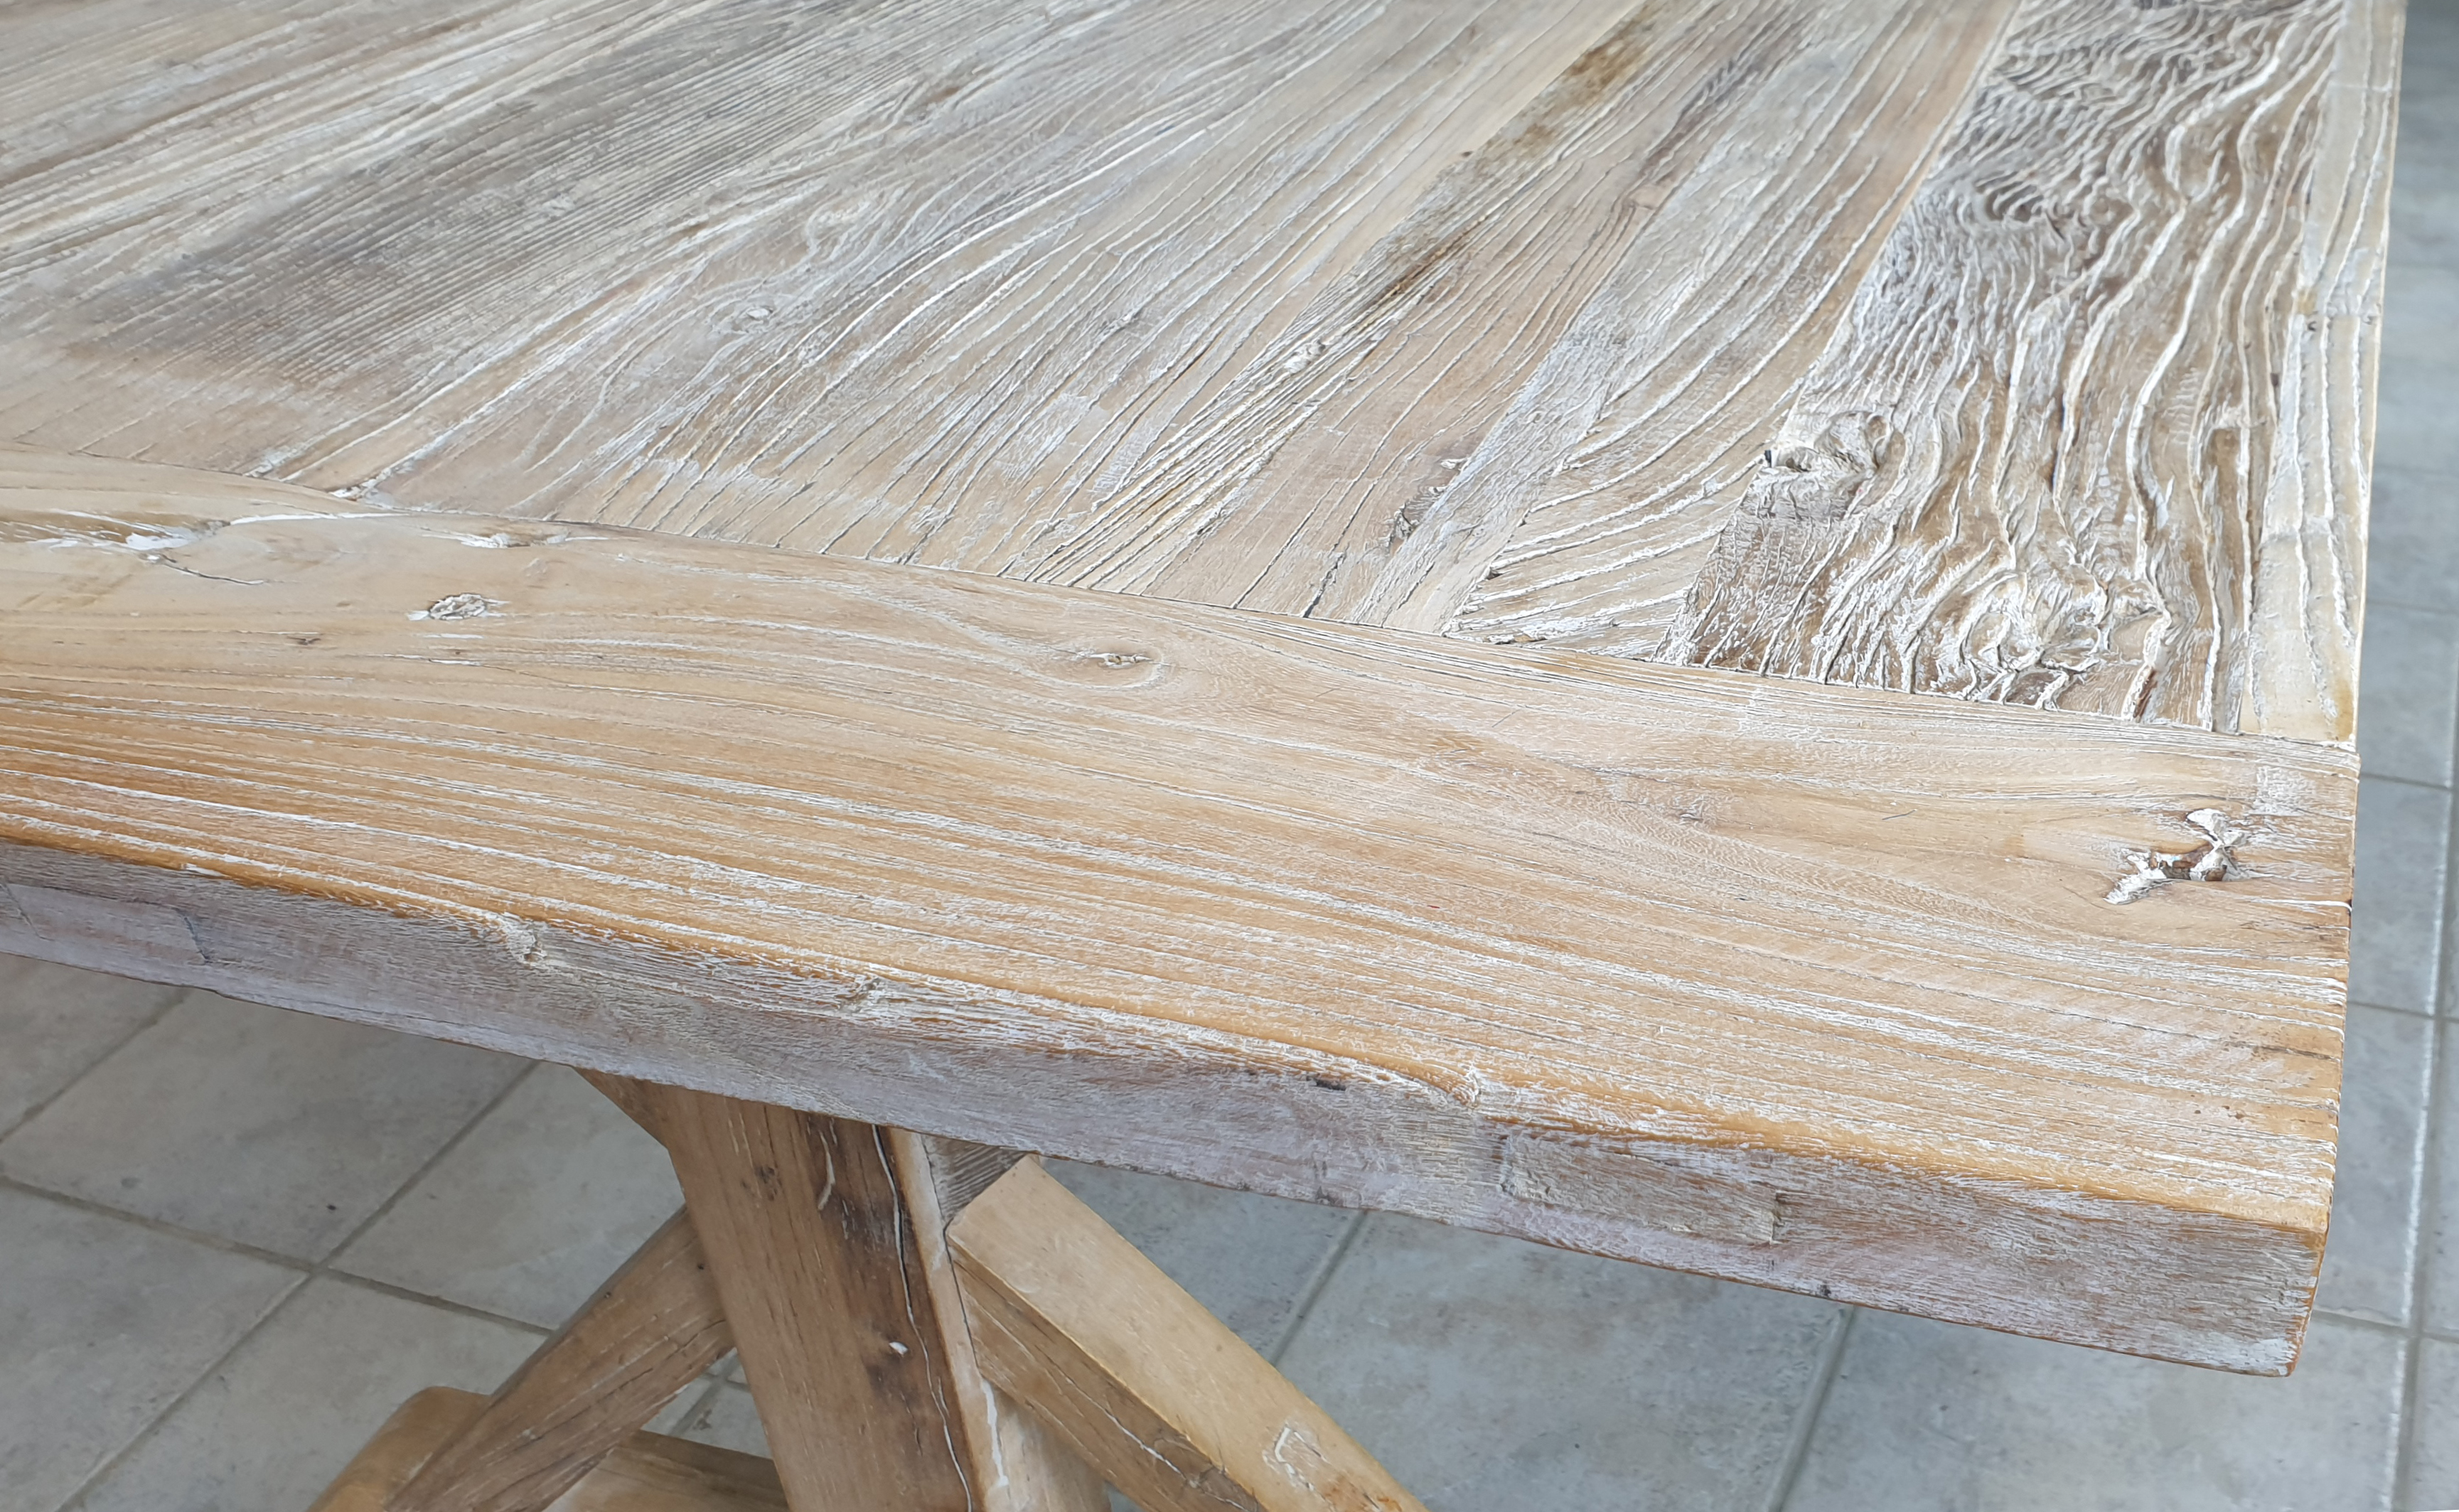 Tisch Große Klostertisch aus Drift Wood Massiv Hartholz 200x100 Esstisch Landhaus